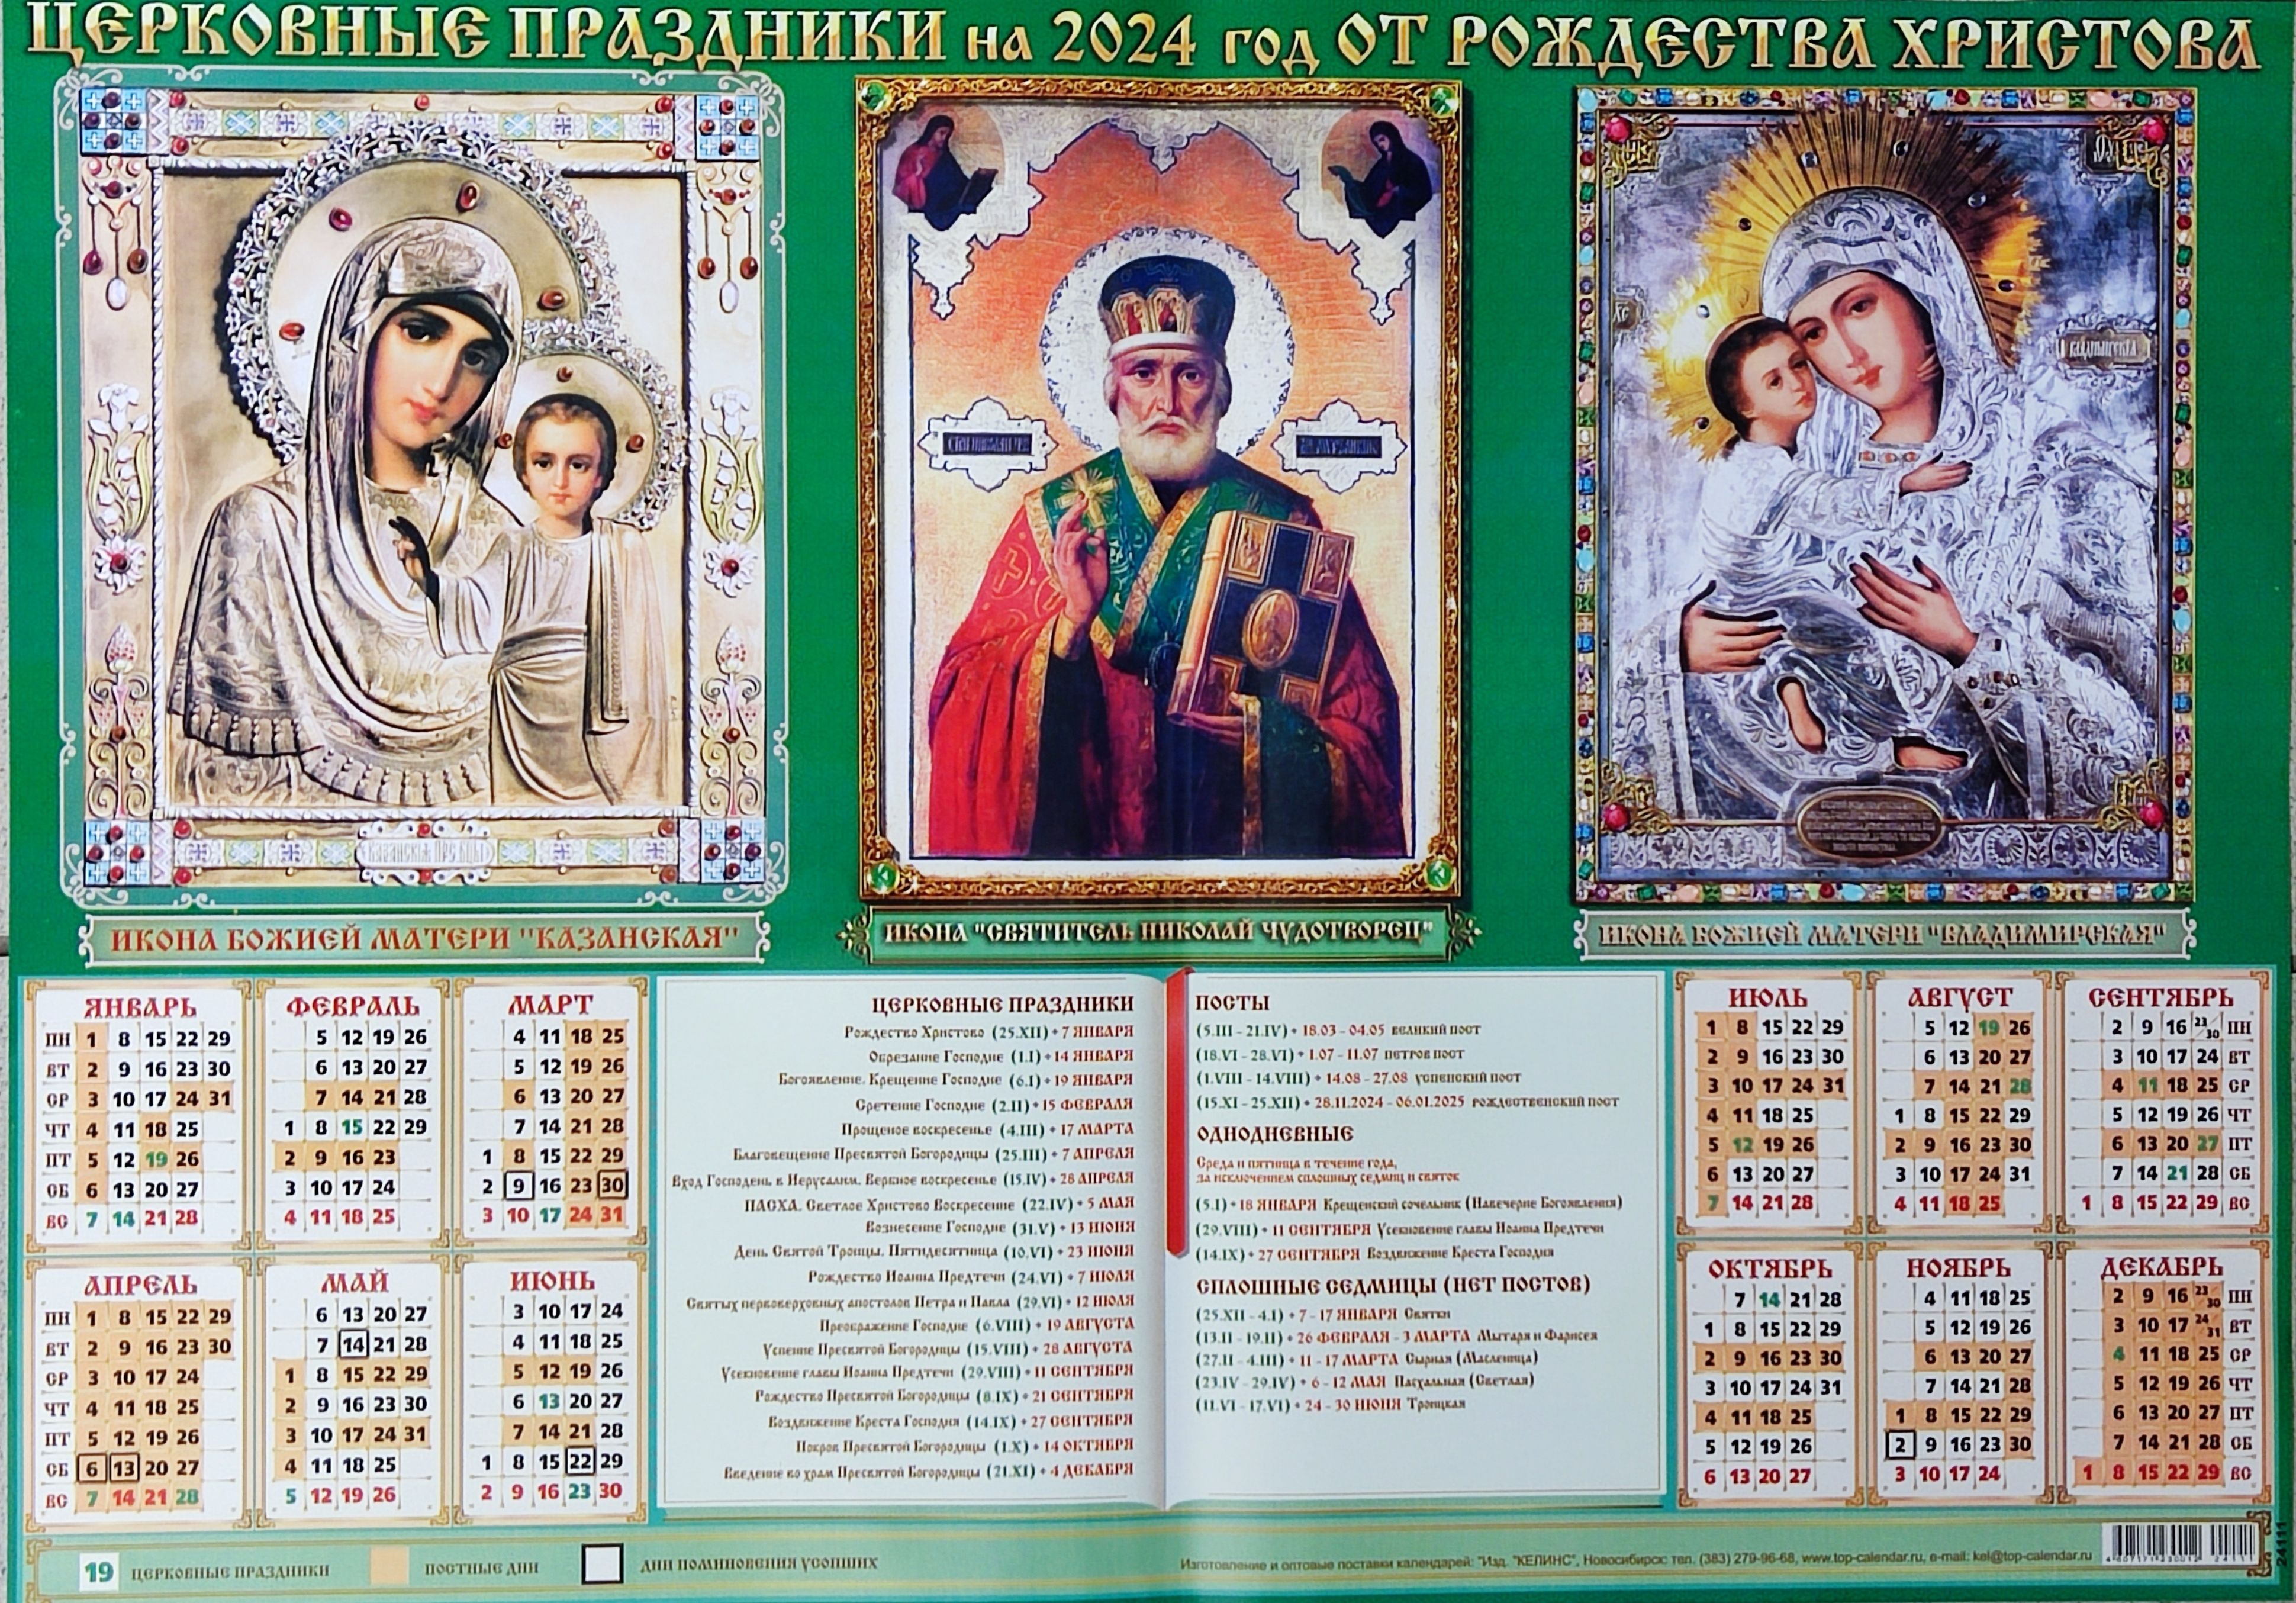 4 апреля какой праздник православный 2024 года. Православный календарь на 2024. Божественный календарь на 2024. Православный календарь на 2024 год. Пост православный 2024.